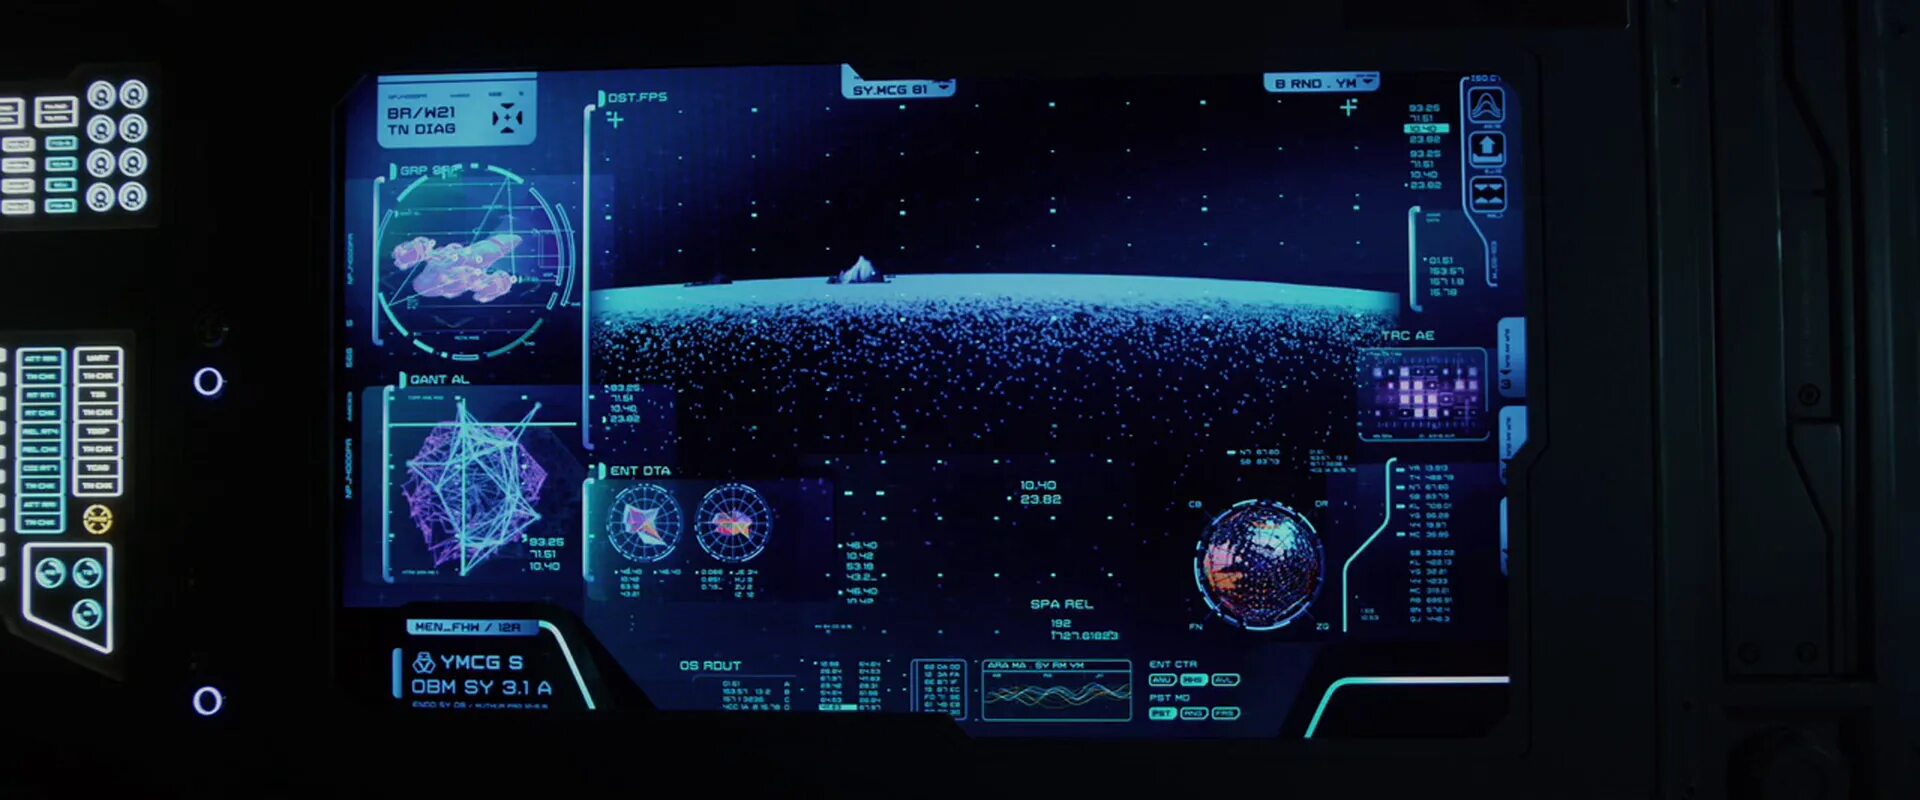 Где на компьютере space. Ностромо космический корабль панель управления. Экран космического корабля. Интерфейс управления космическим кораблем. Монитор космического корабля.